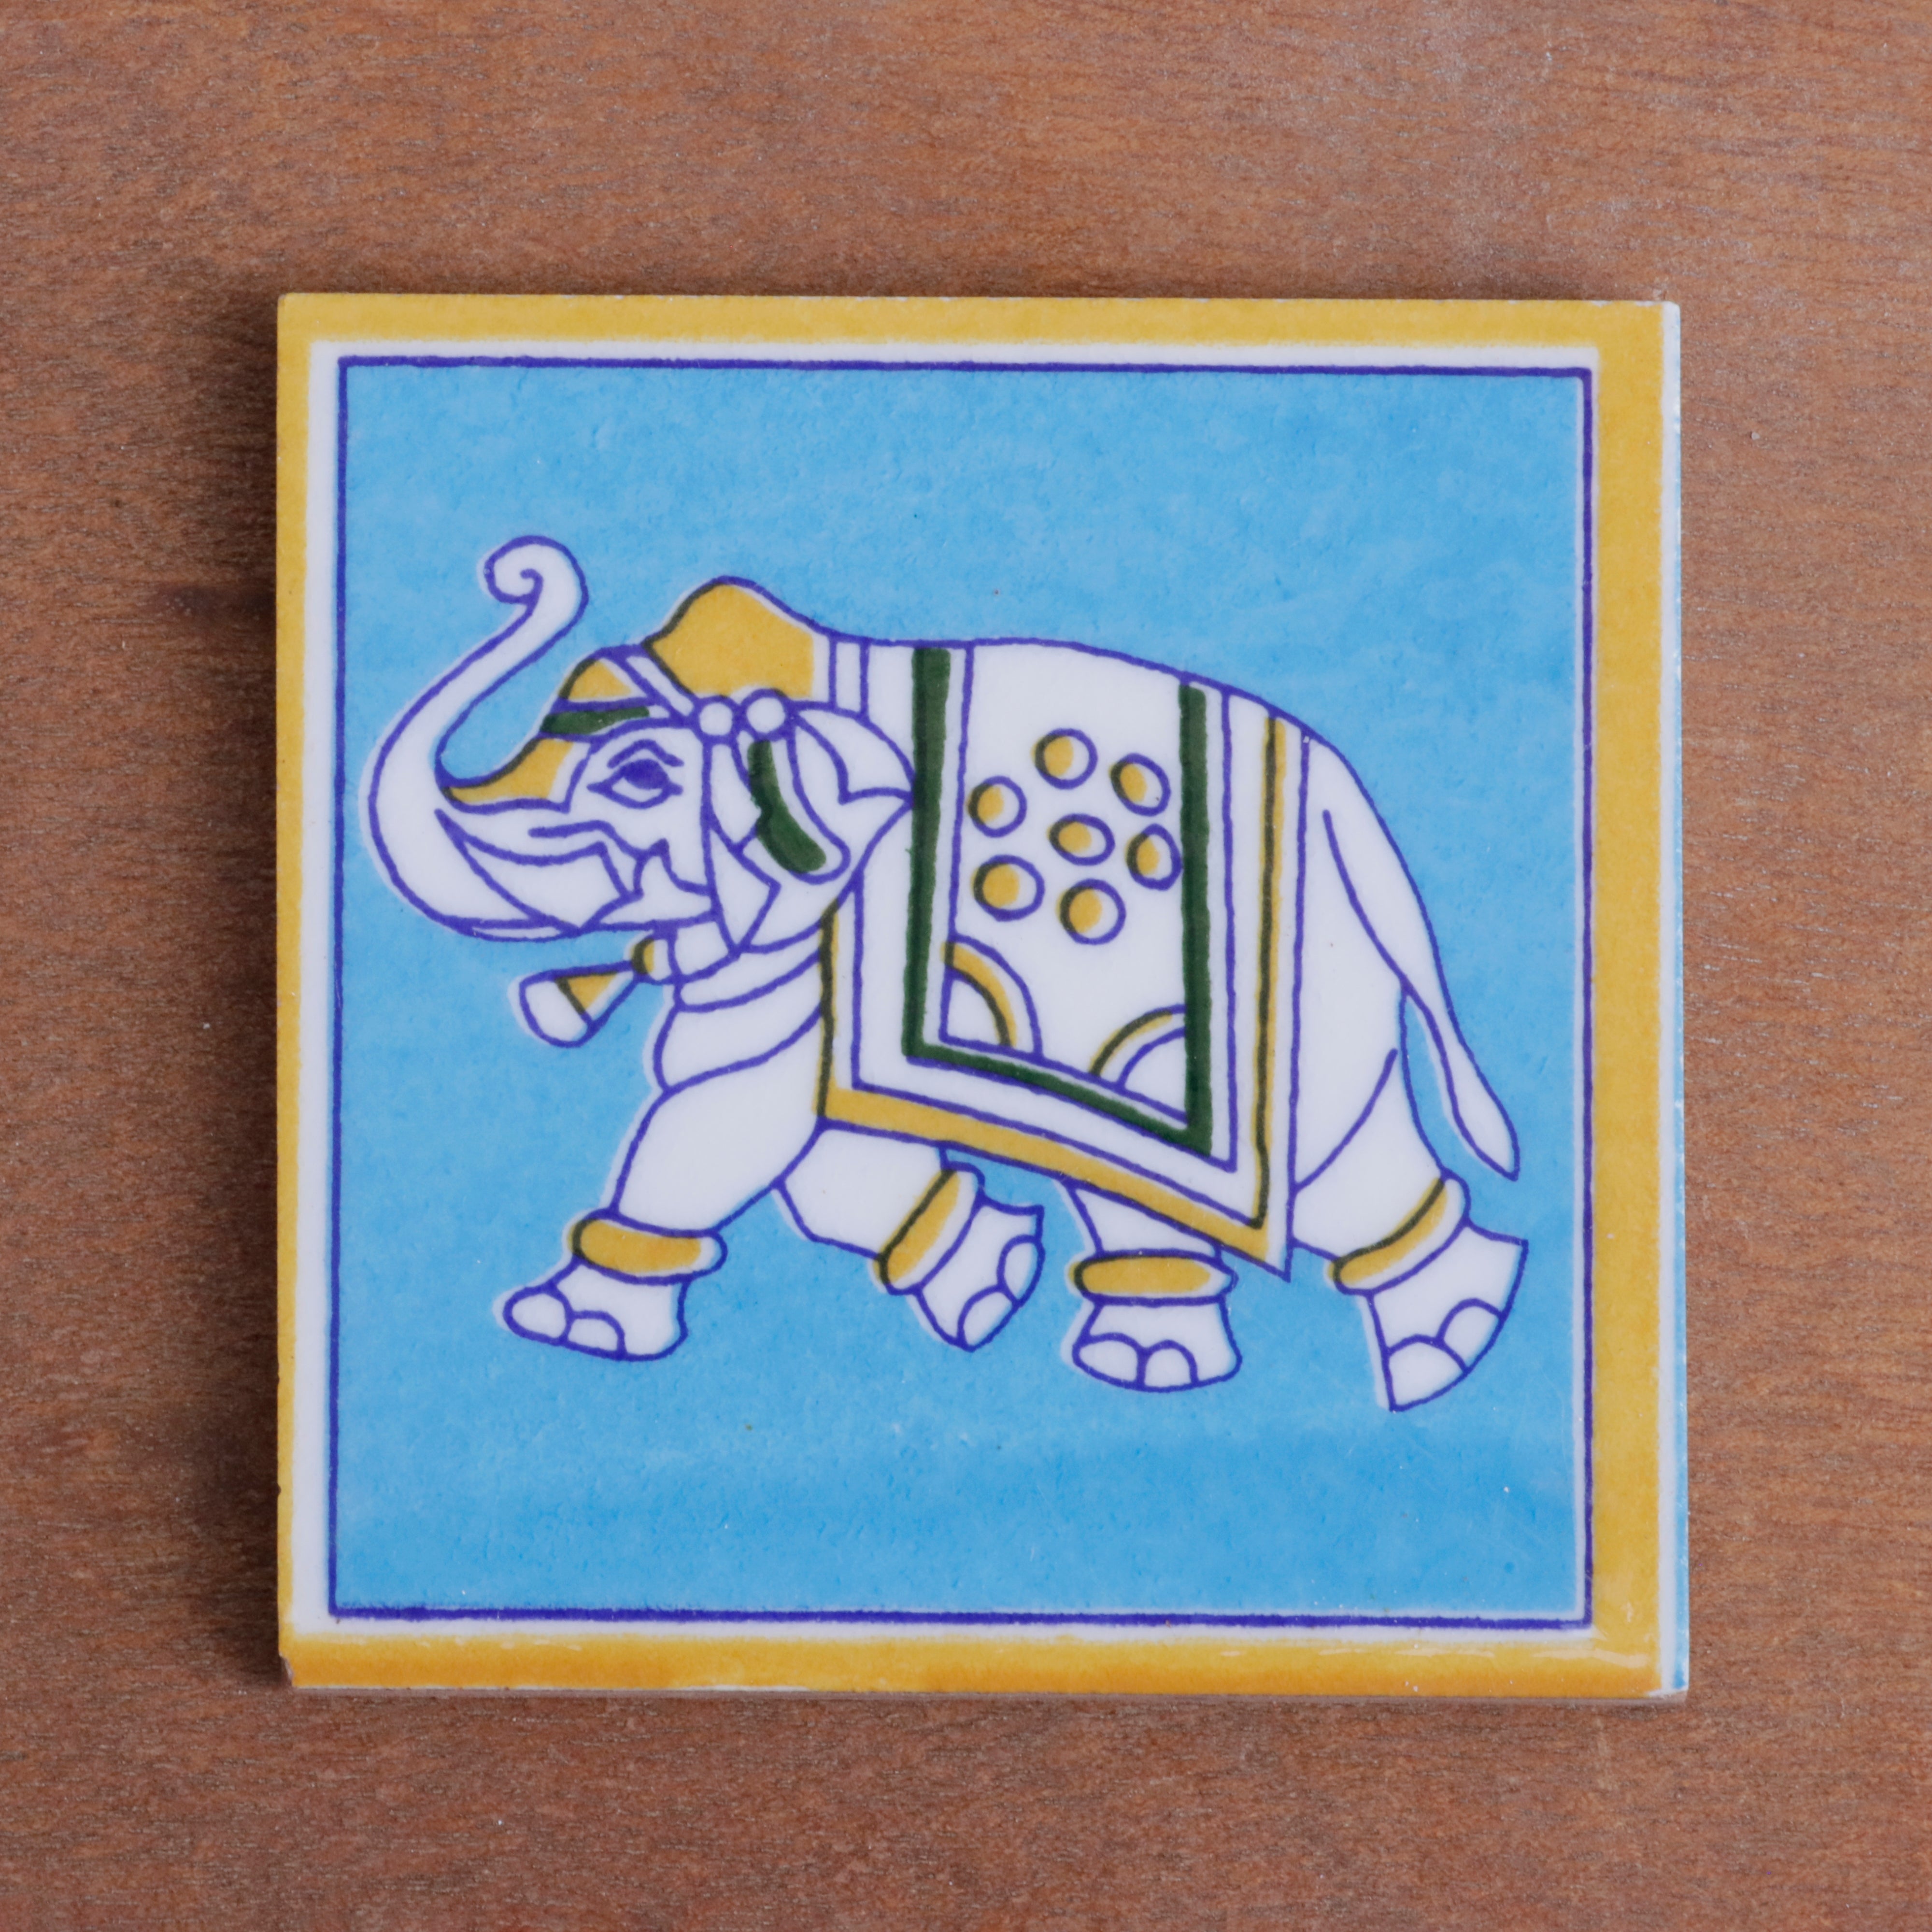 Vintage Royal Style Elephant Designed Ceramic Square Tile Set of 2 Ceramic Tile